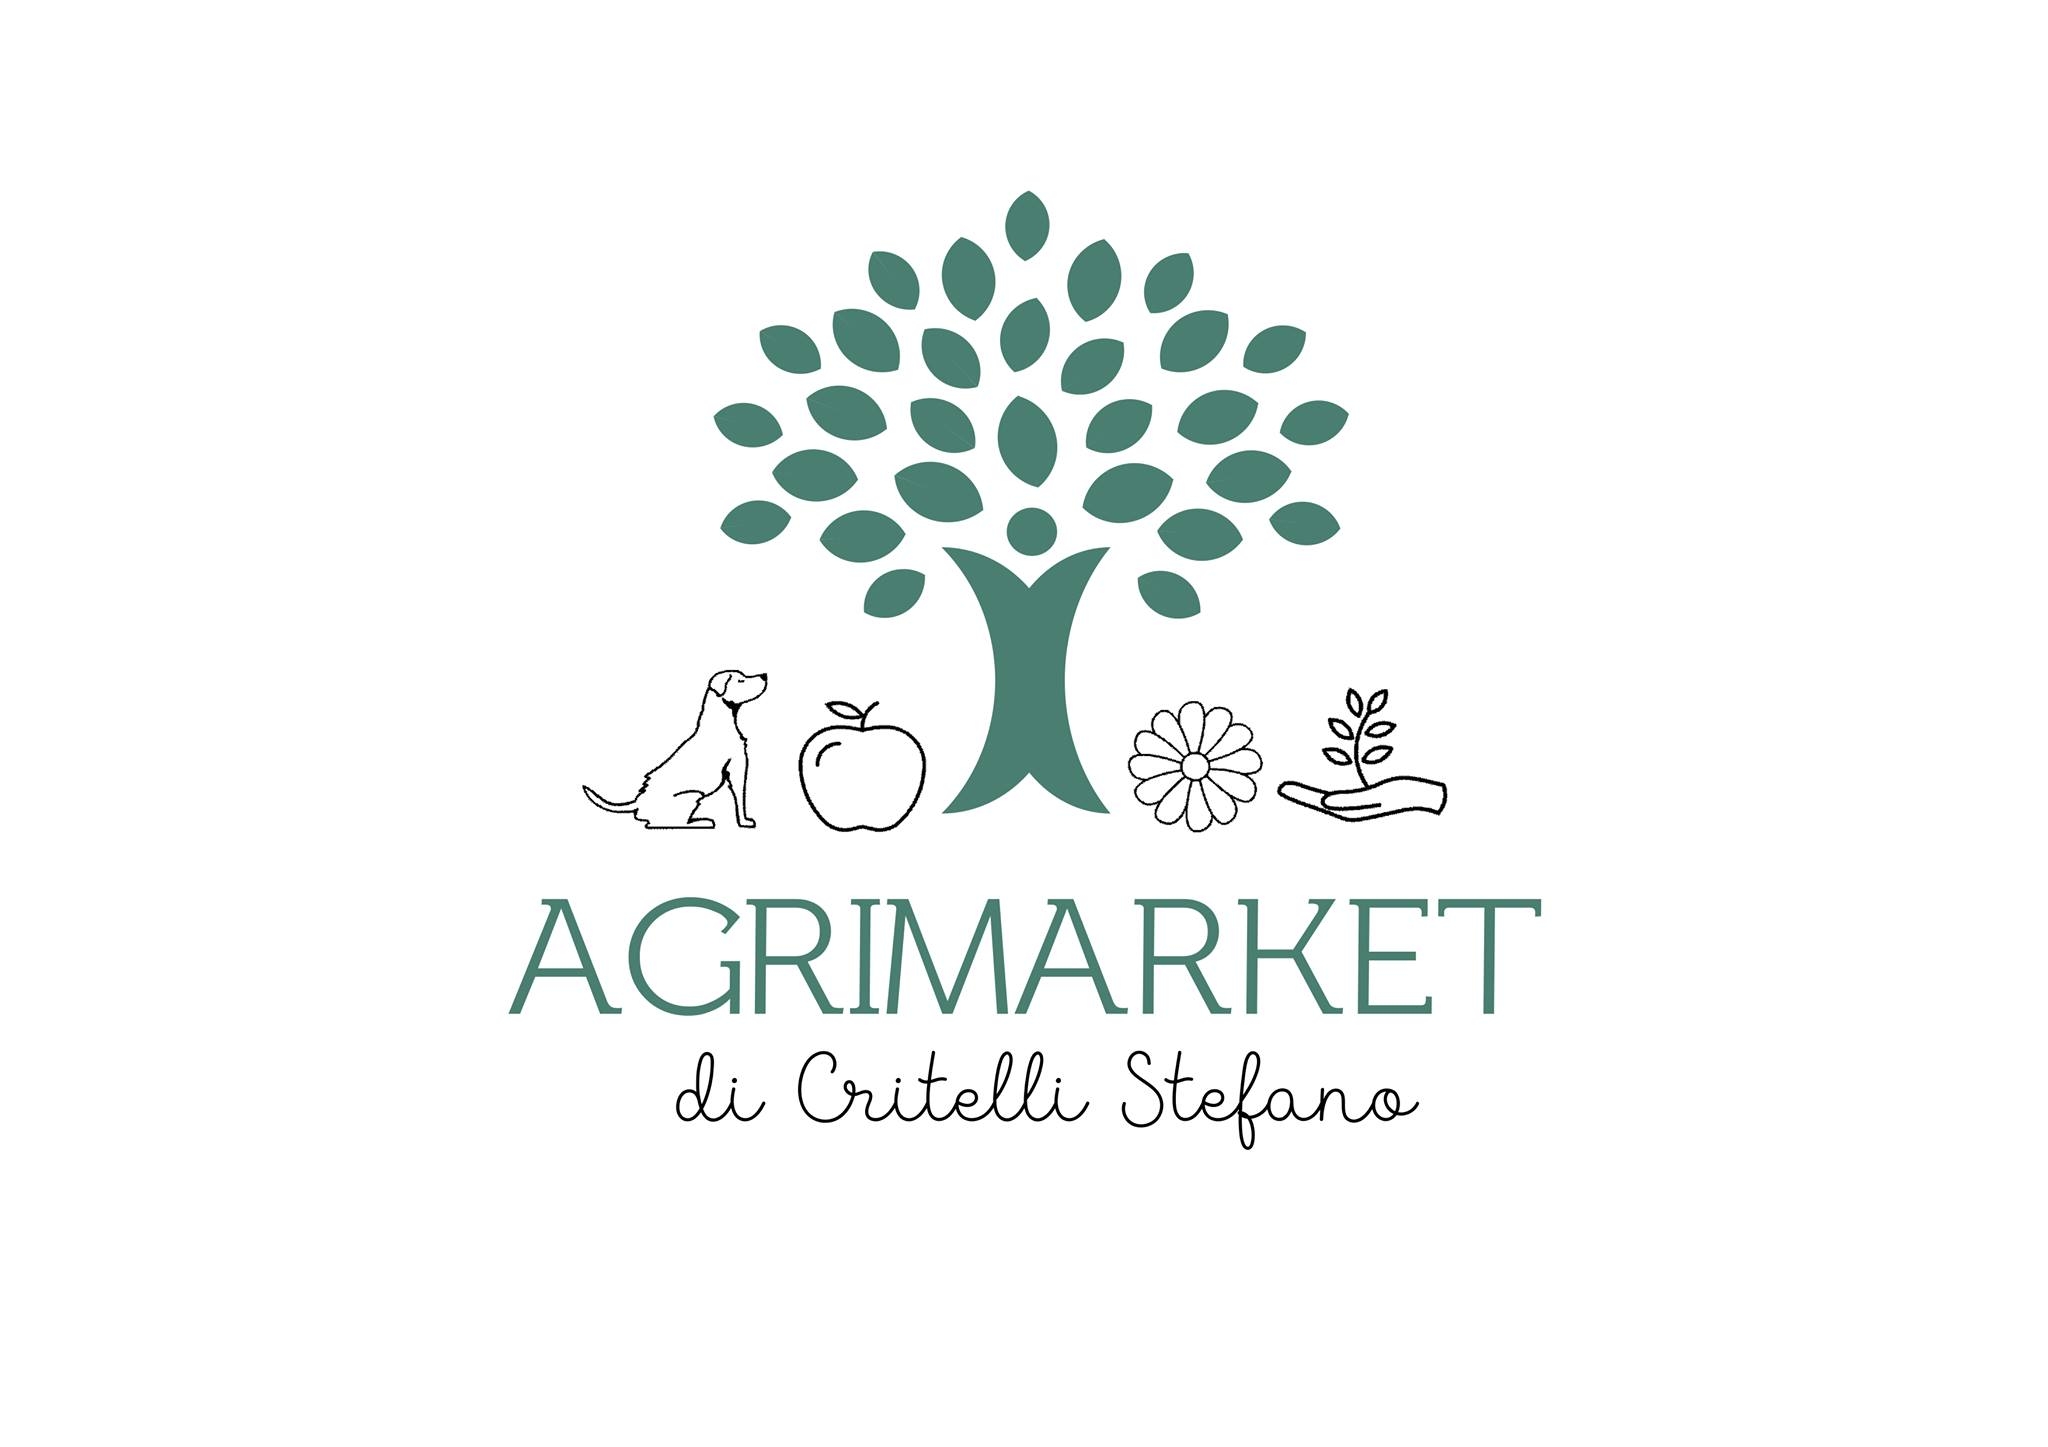 Agrimarket Critelli